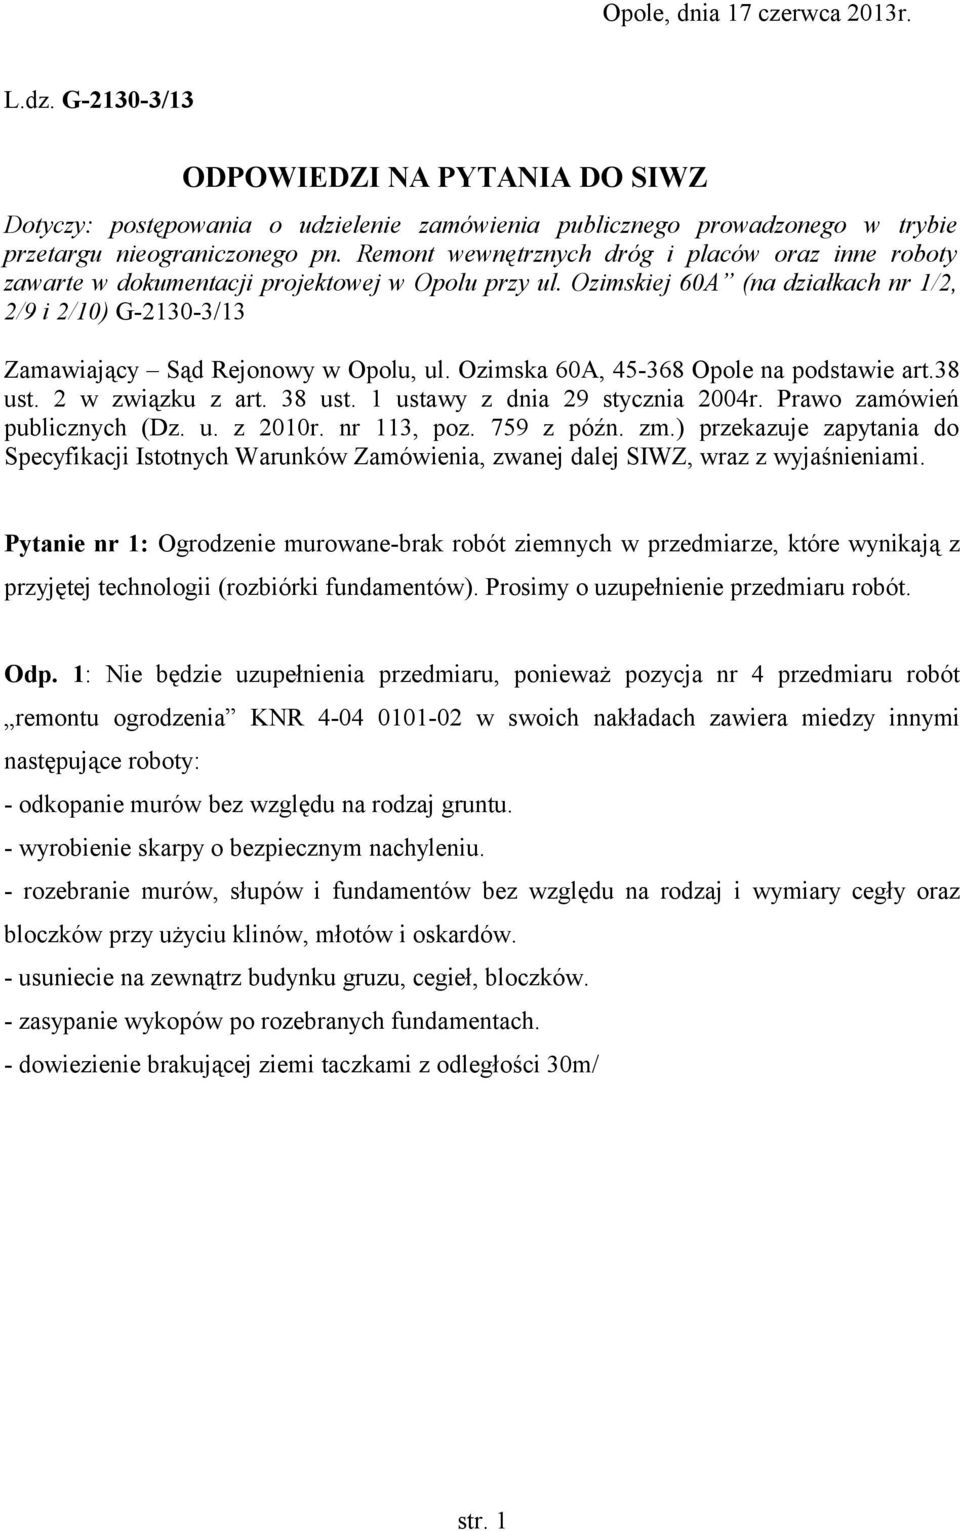 Ozimska 60A, 45-368 Opole na podstawie art.38 ust. 2 w związku z art. 38 ust. 1 ustawy z dnia 29 stycznia 2004r. Prawo zamówień publicznych (Dz. u. z 2010r. nr 113, poz. 759 z późn. zm.